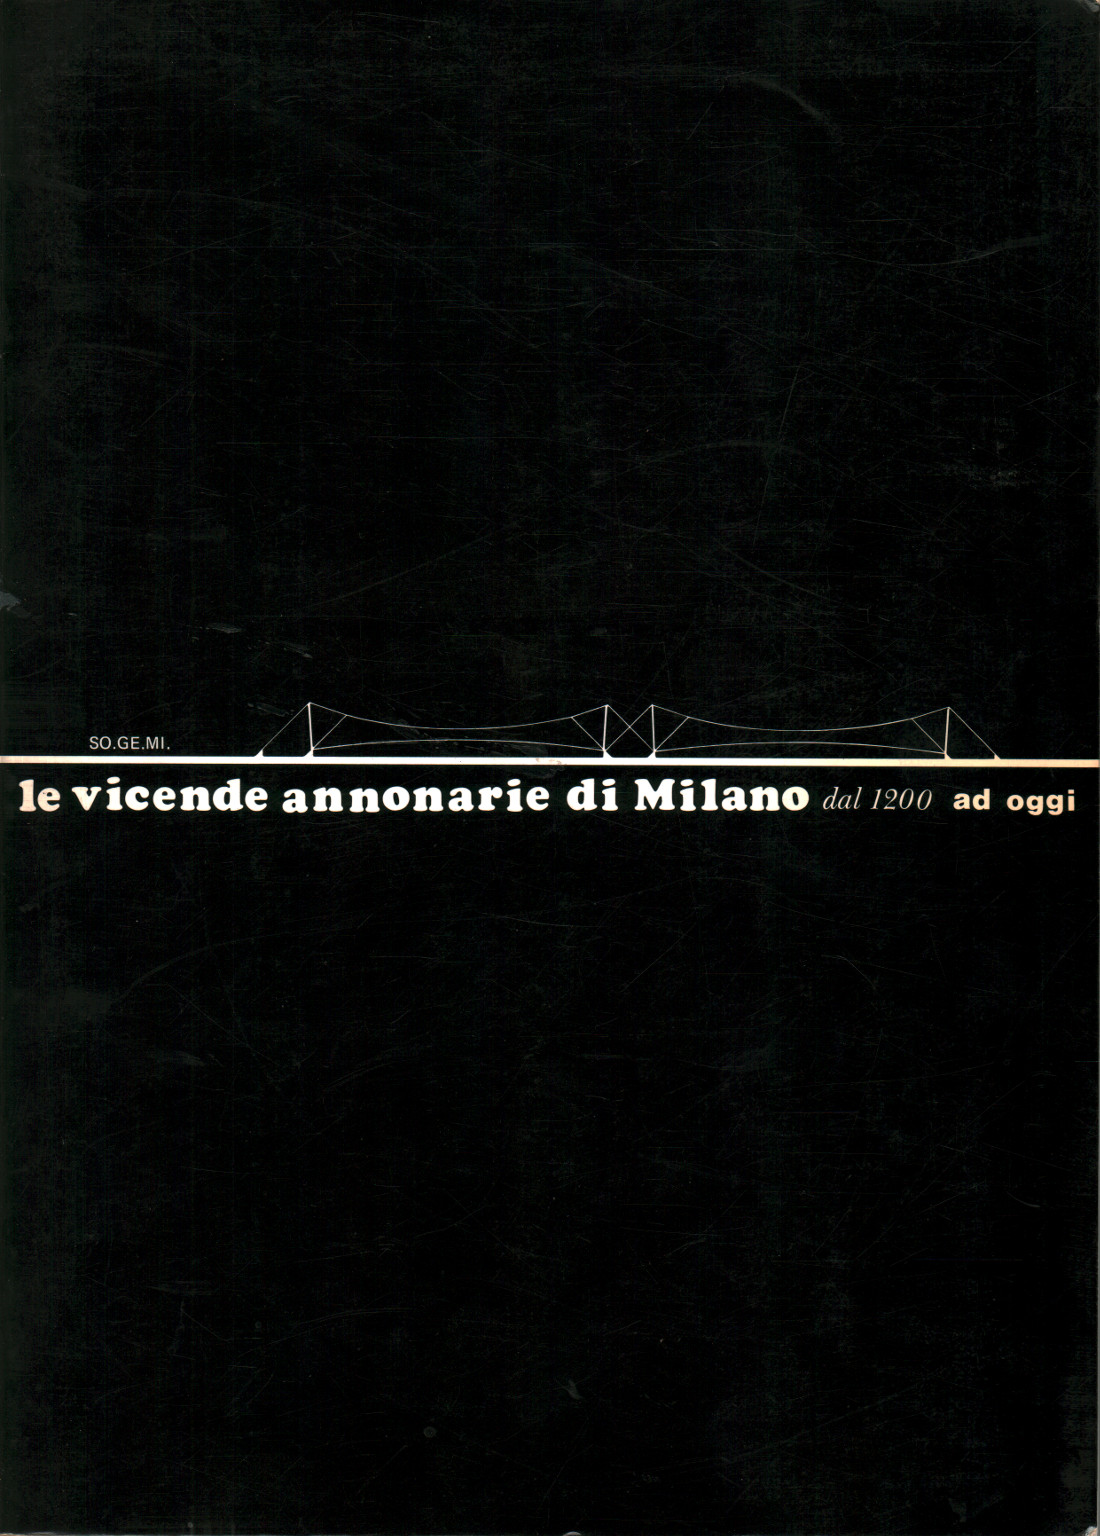 Le vicende annotarie di Milano dal 1200 ad oggi, s.a.